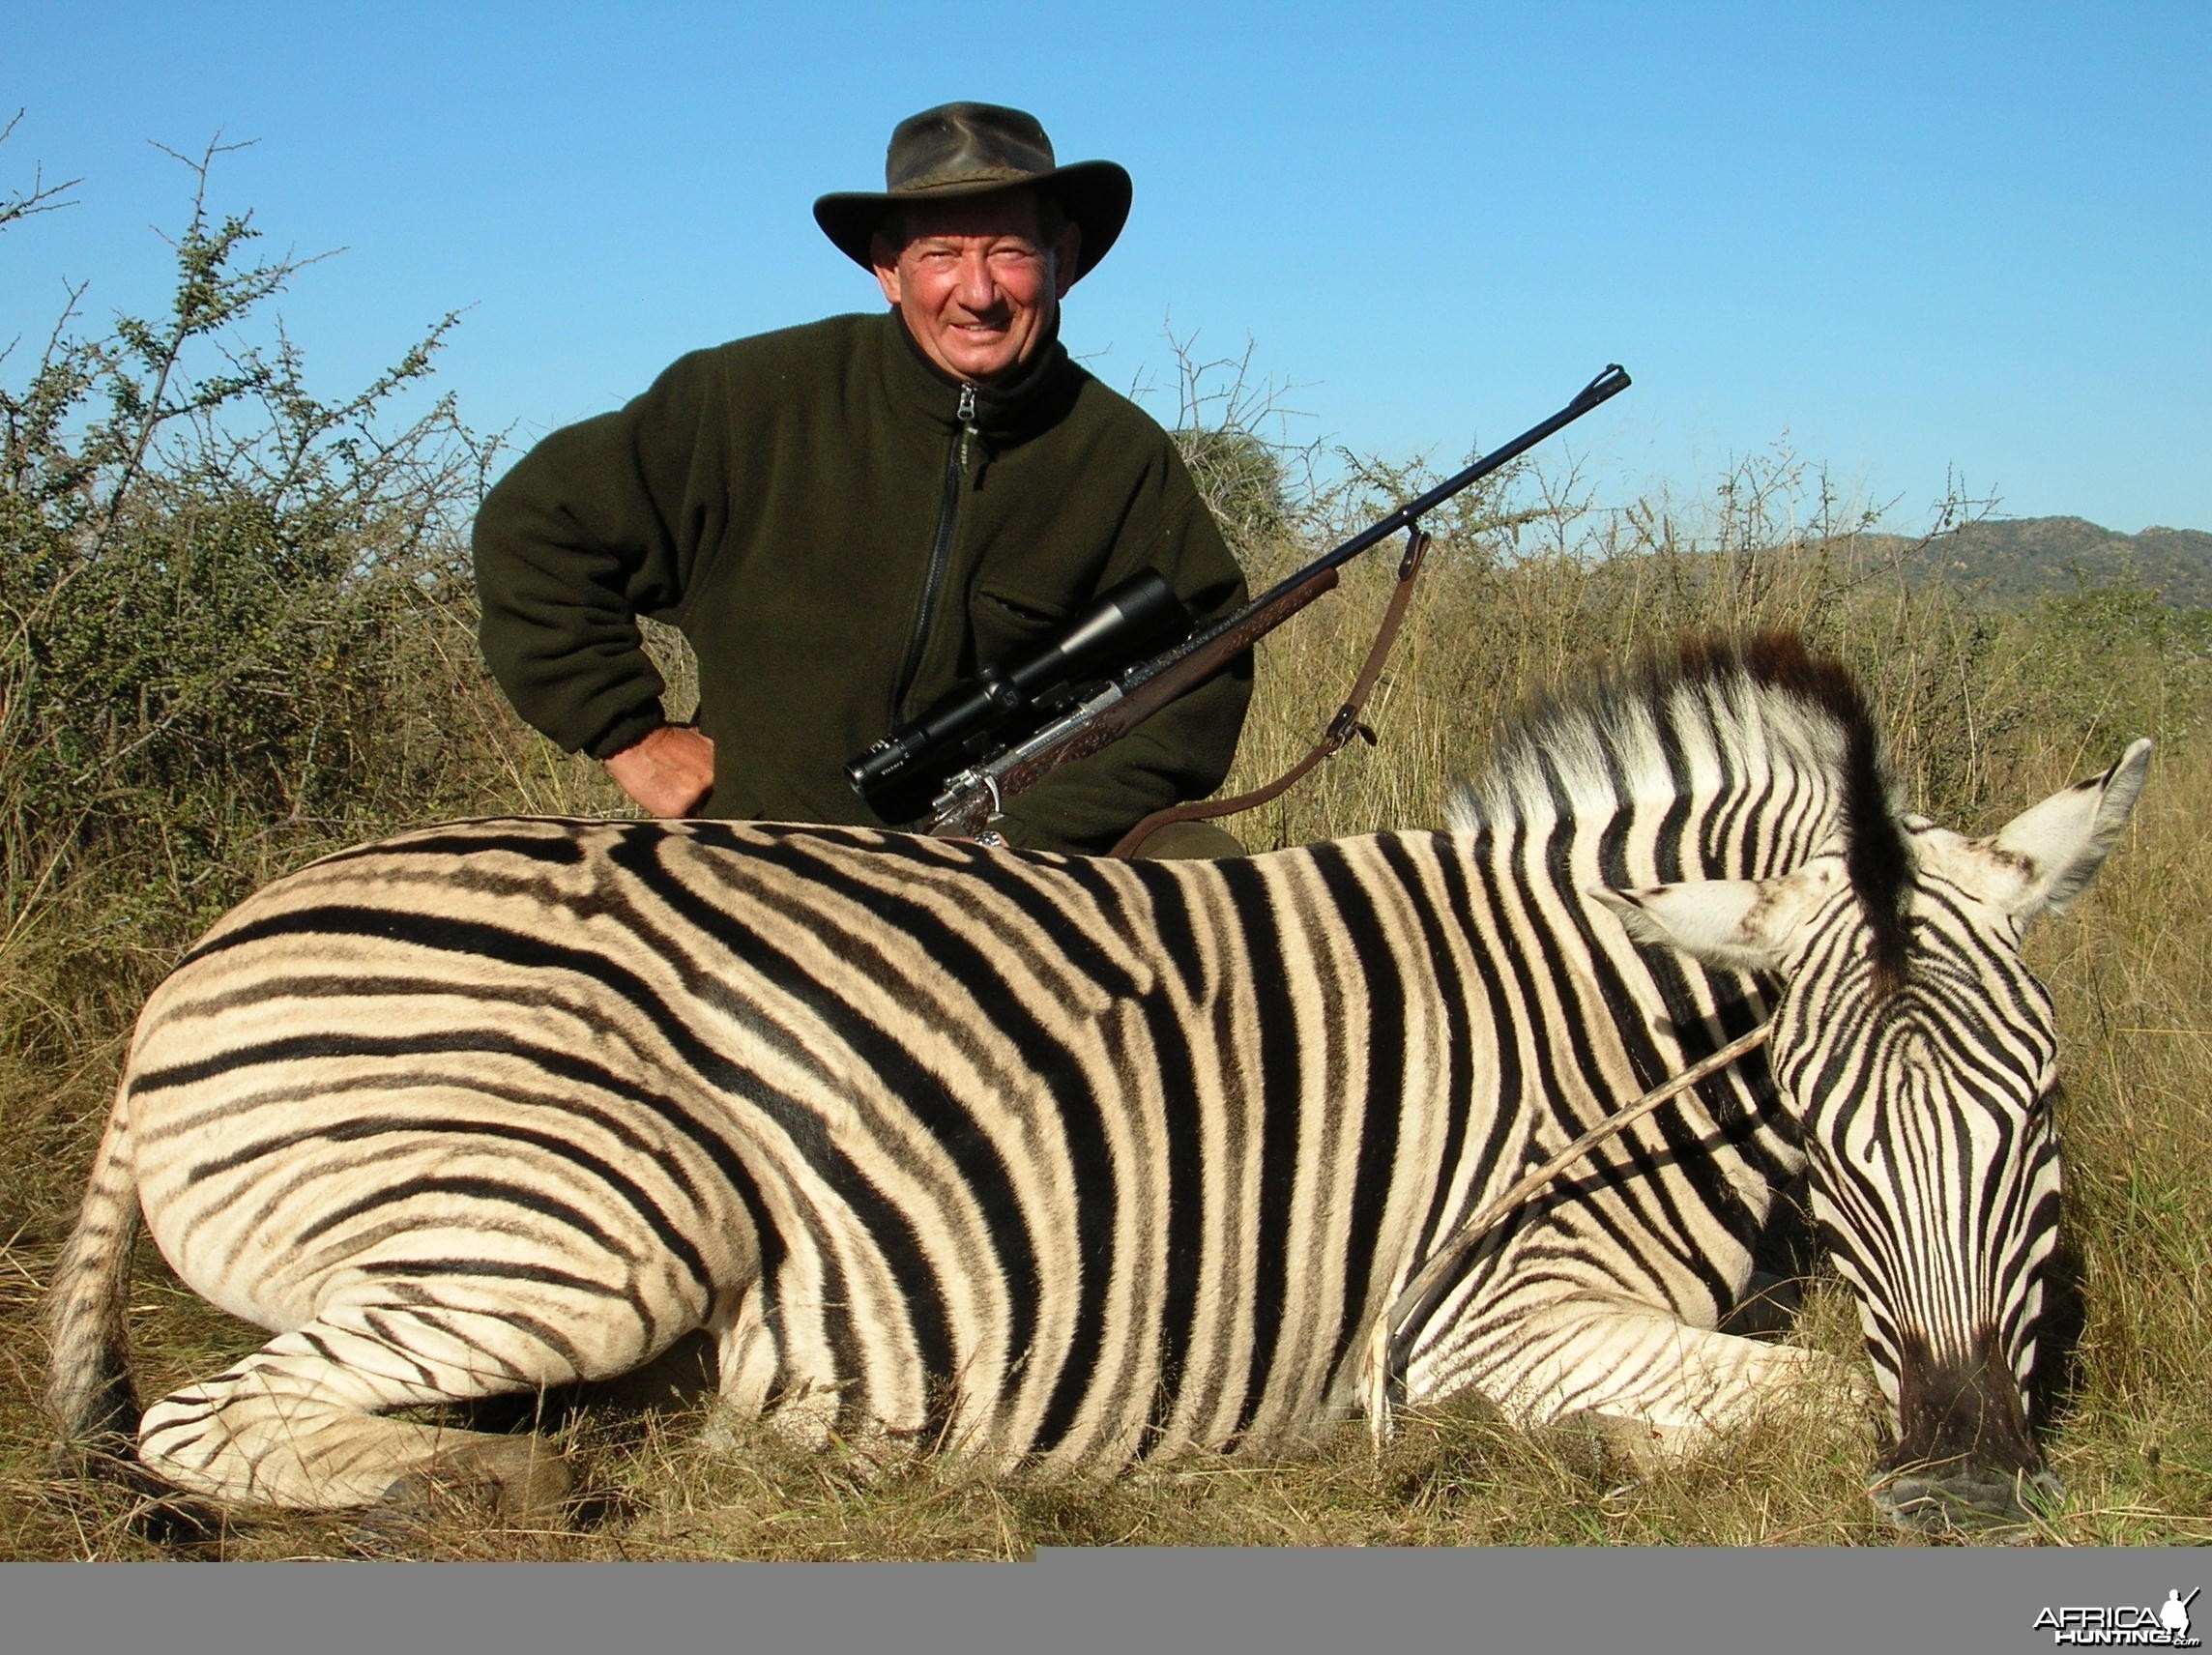 Hunting Burchell's Plain Zebra in Namibia